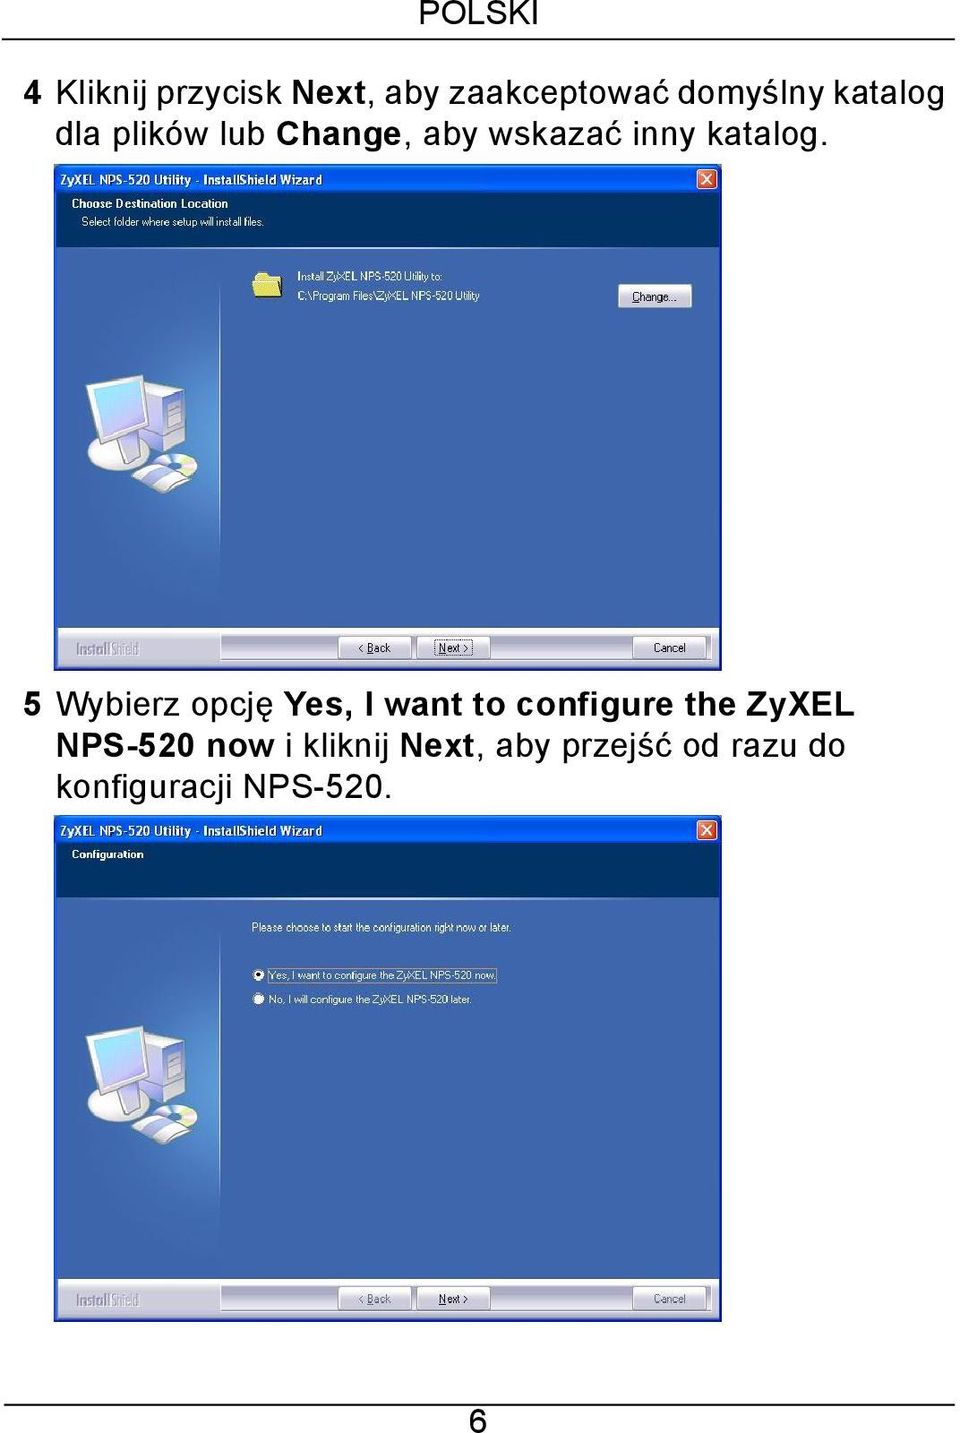 5 Wybierz opcję Yes, I want to configure the ZyXEL NPS-520